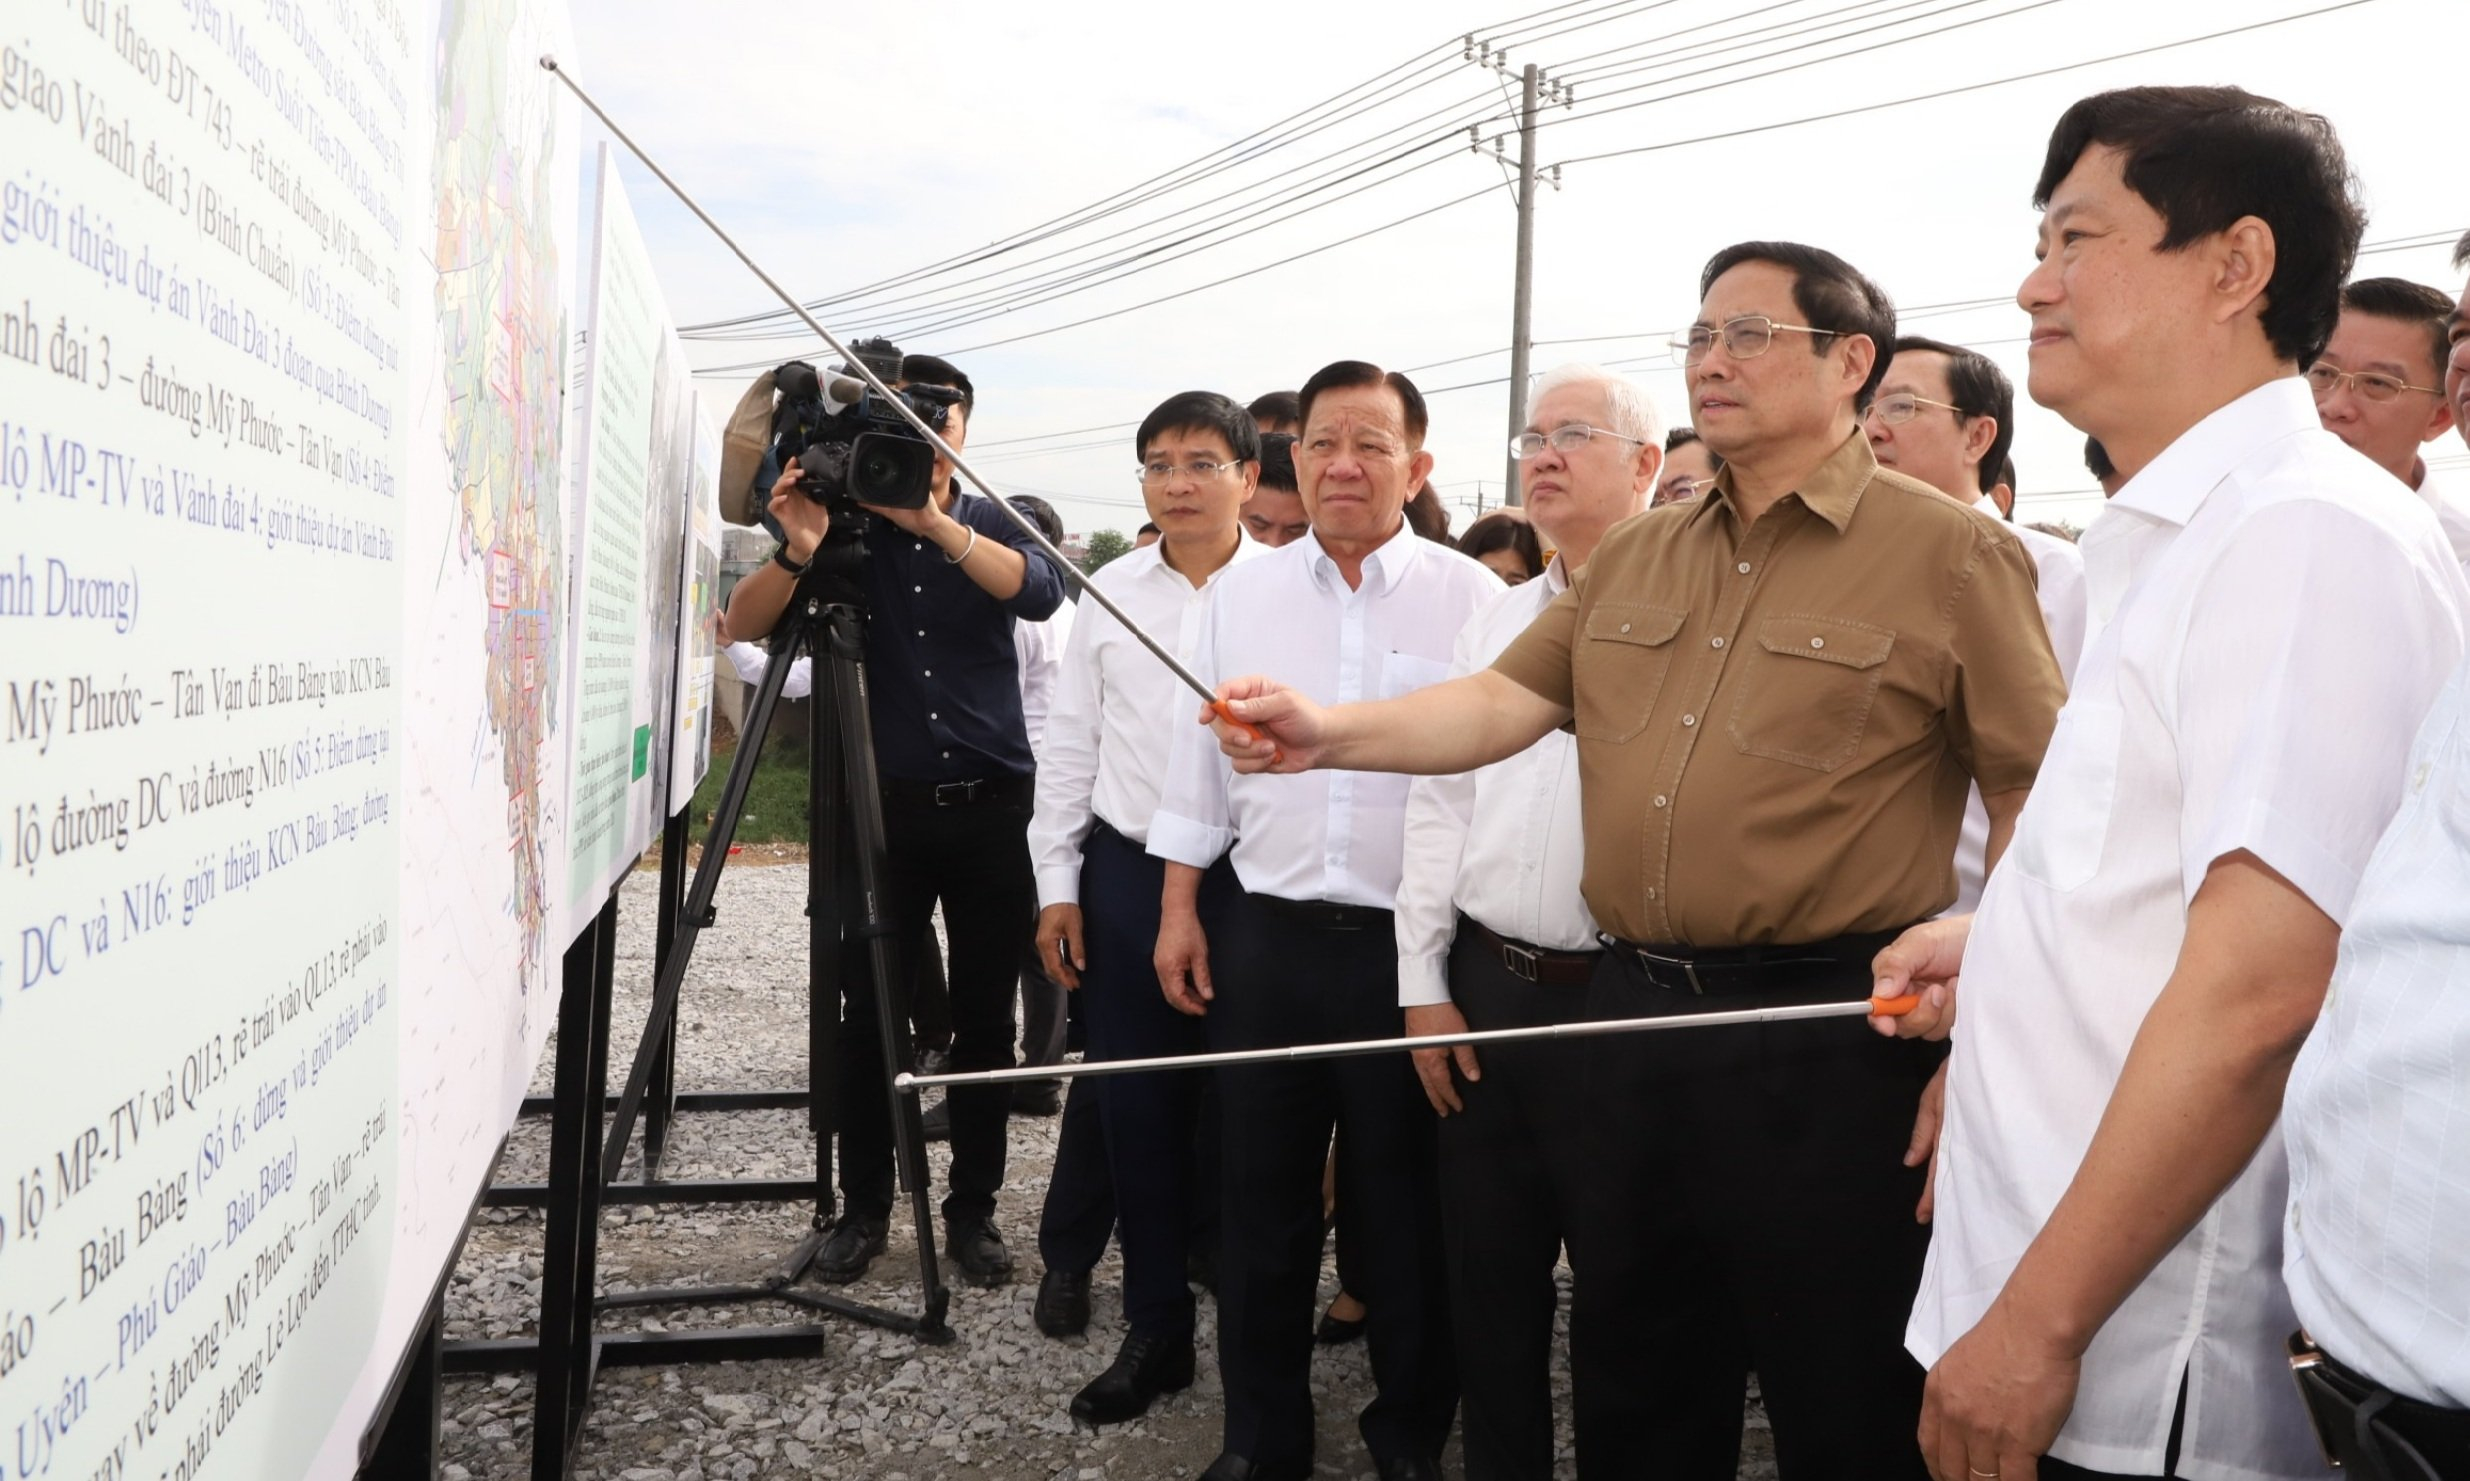 Hình 1: Hình 2: Thủ tướng đã nghe báo cáo về quy hoạch và tiến độ chuẩn bị triển khai xây dựng đường cao tốc TP HCM - Thủ Dầu Một - Chơn Thành.Hình 3: